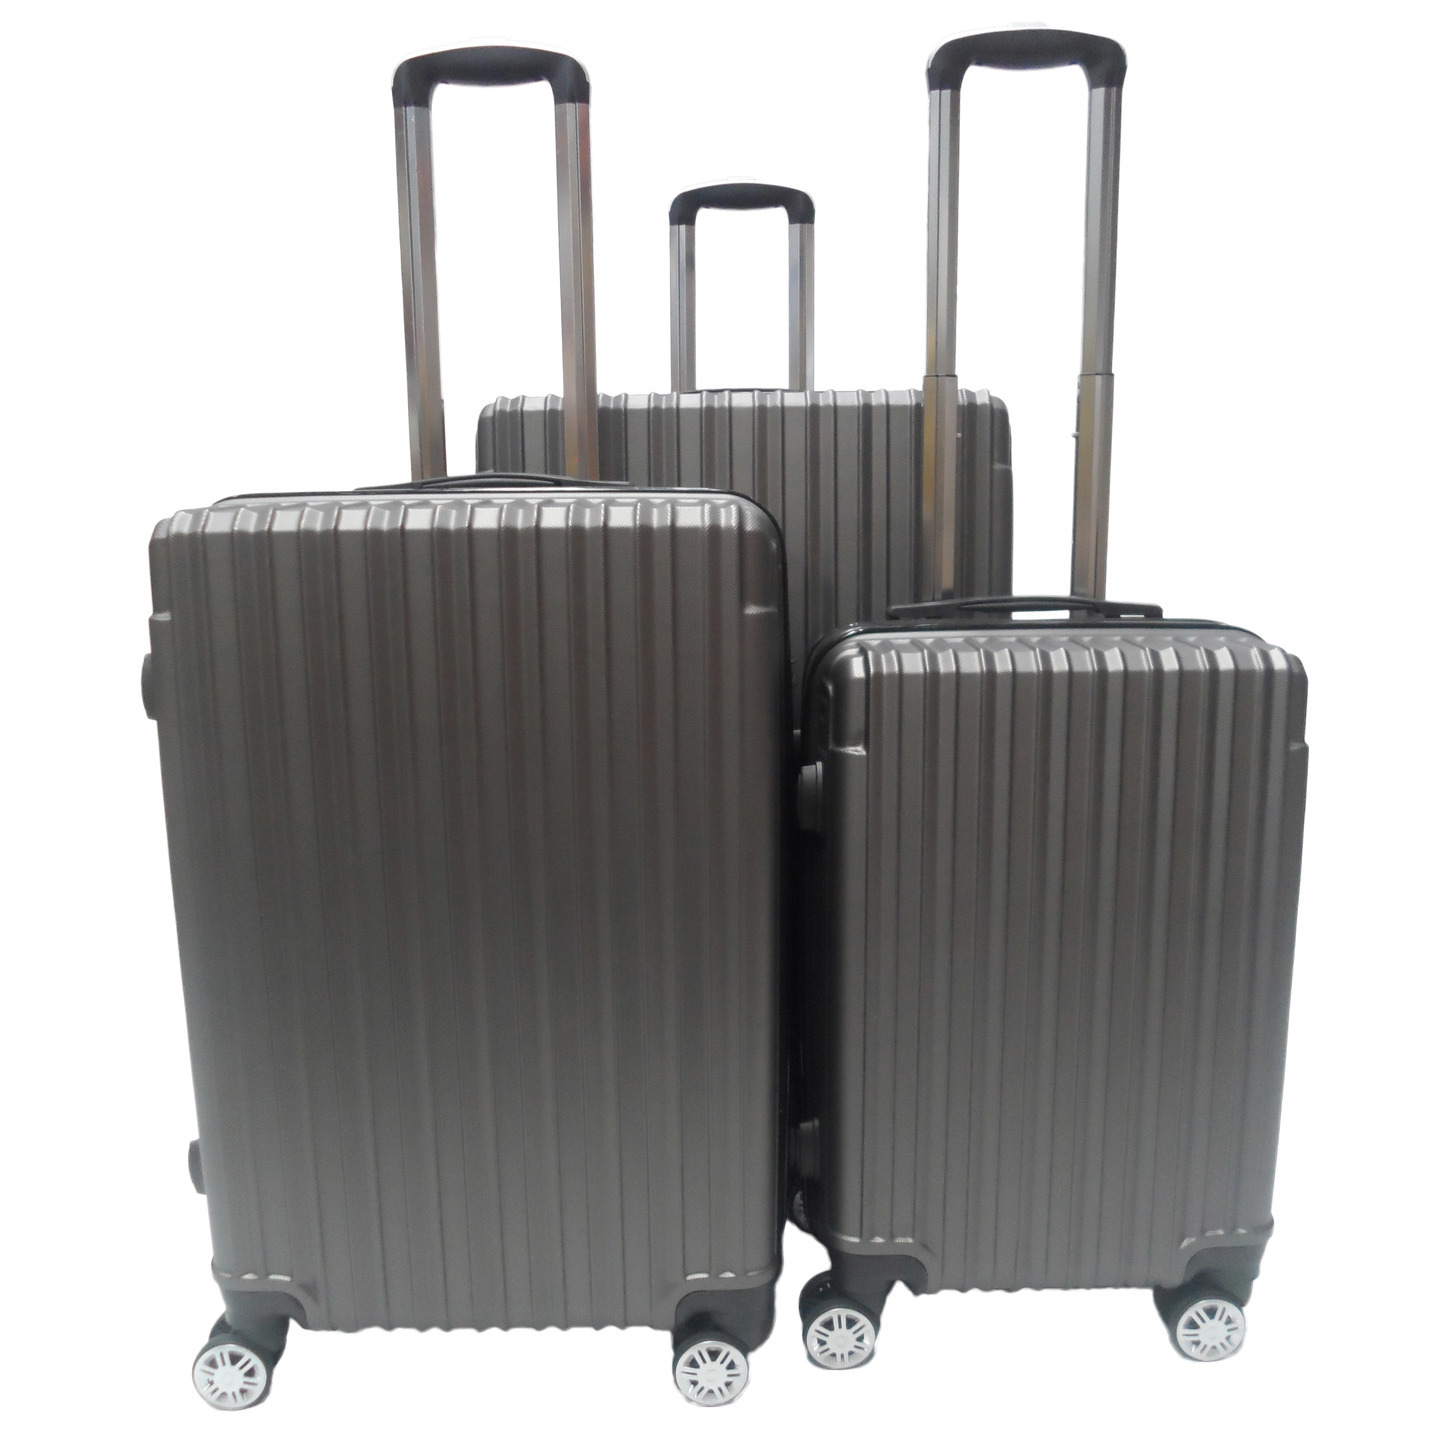 RV-60 Elegant Hard Box Luggage - Grey 20 inch, 24 inch,28 inch